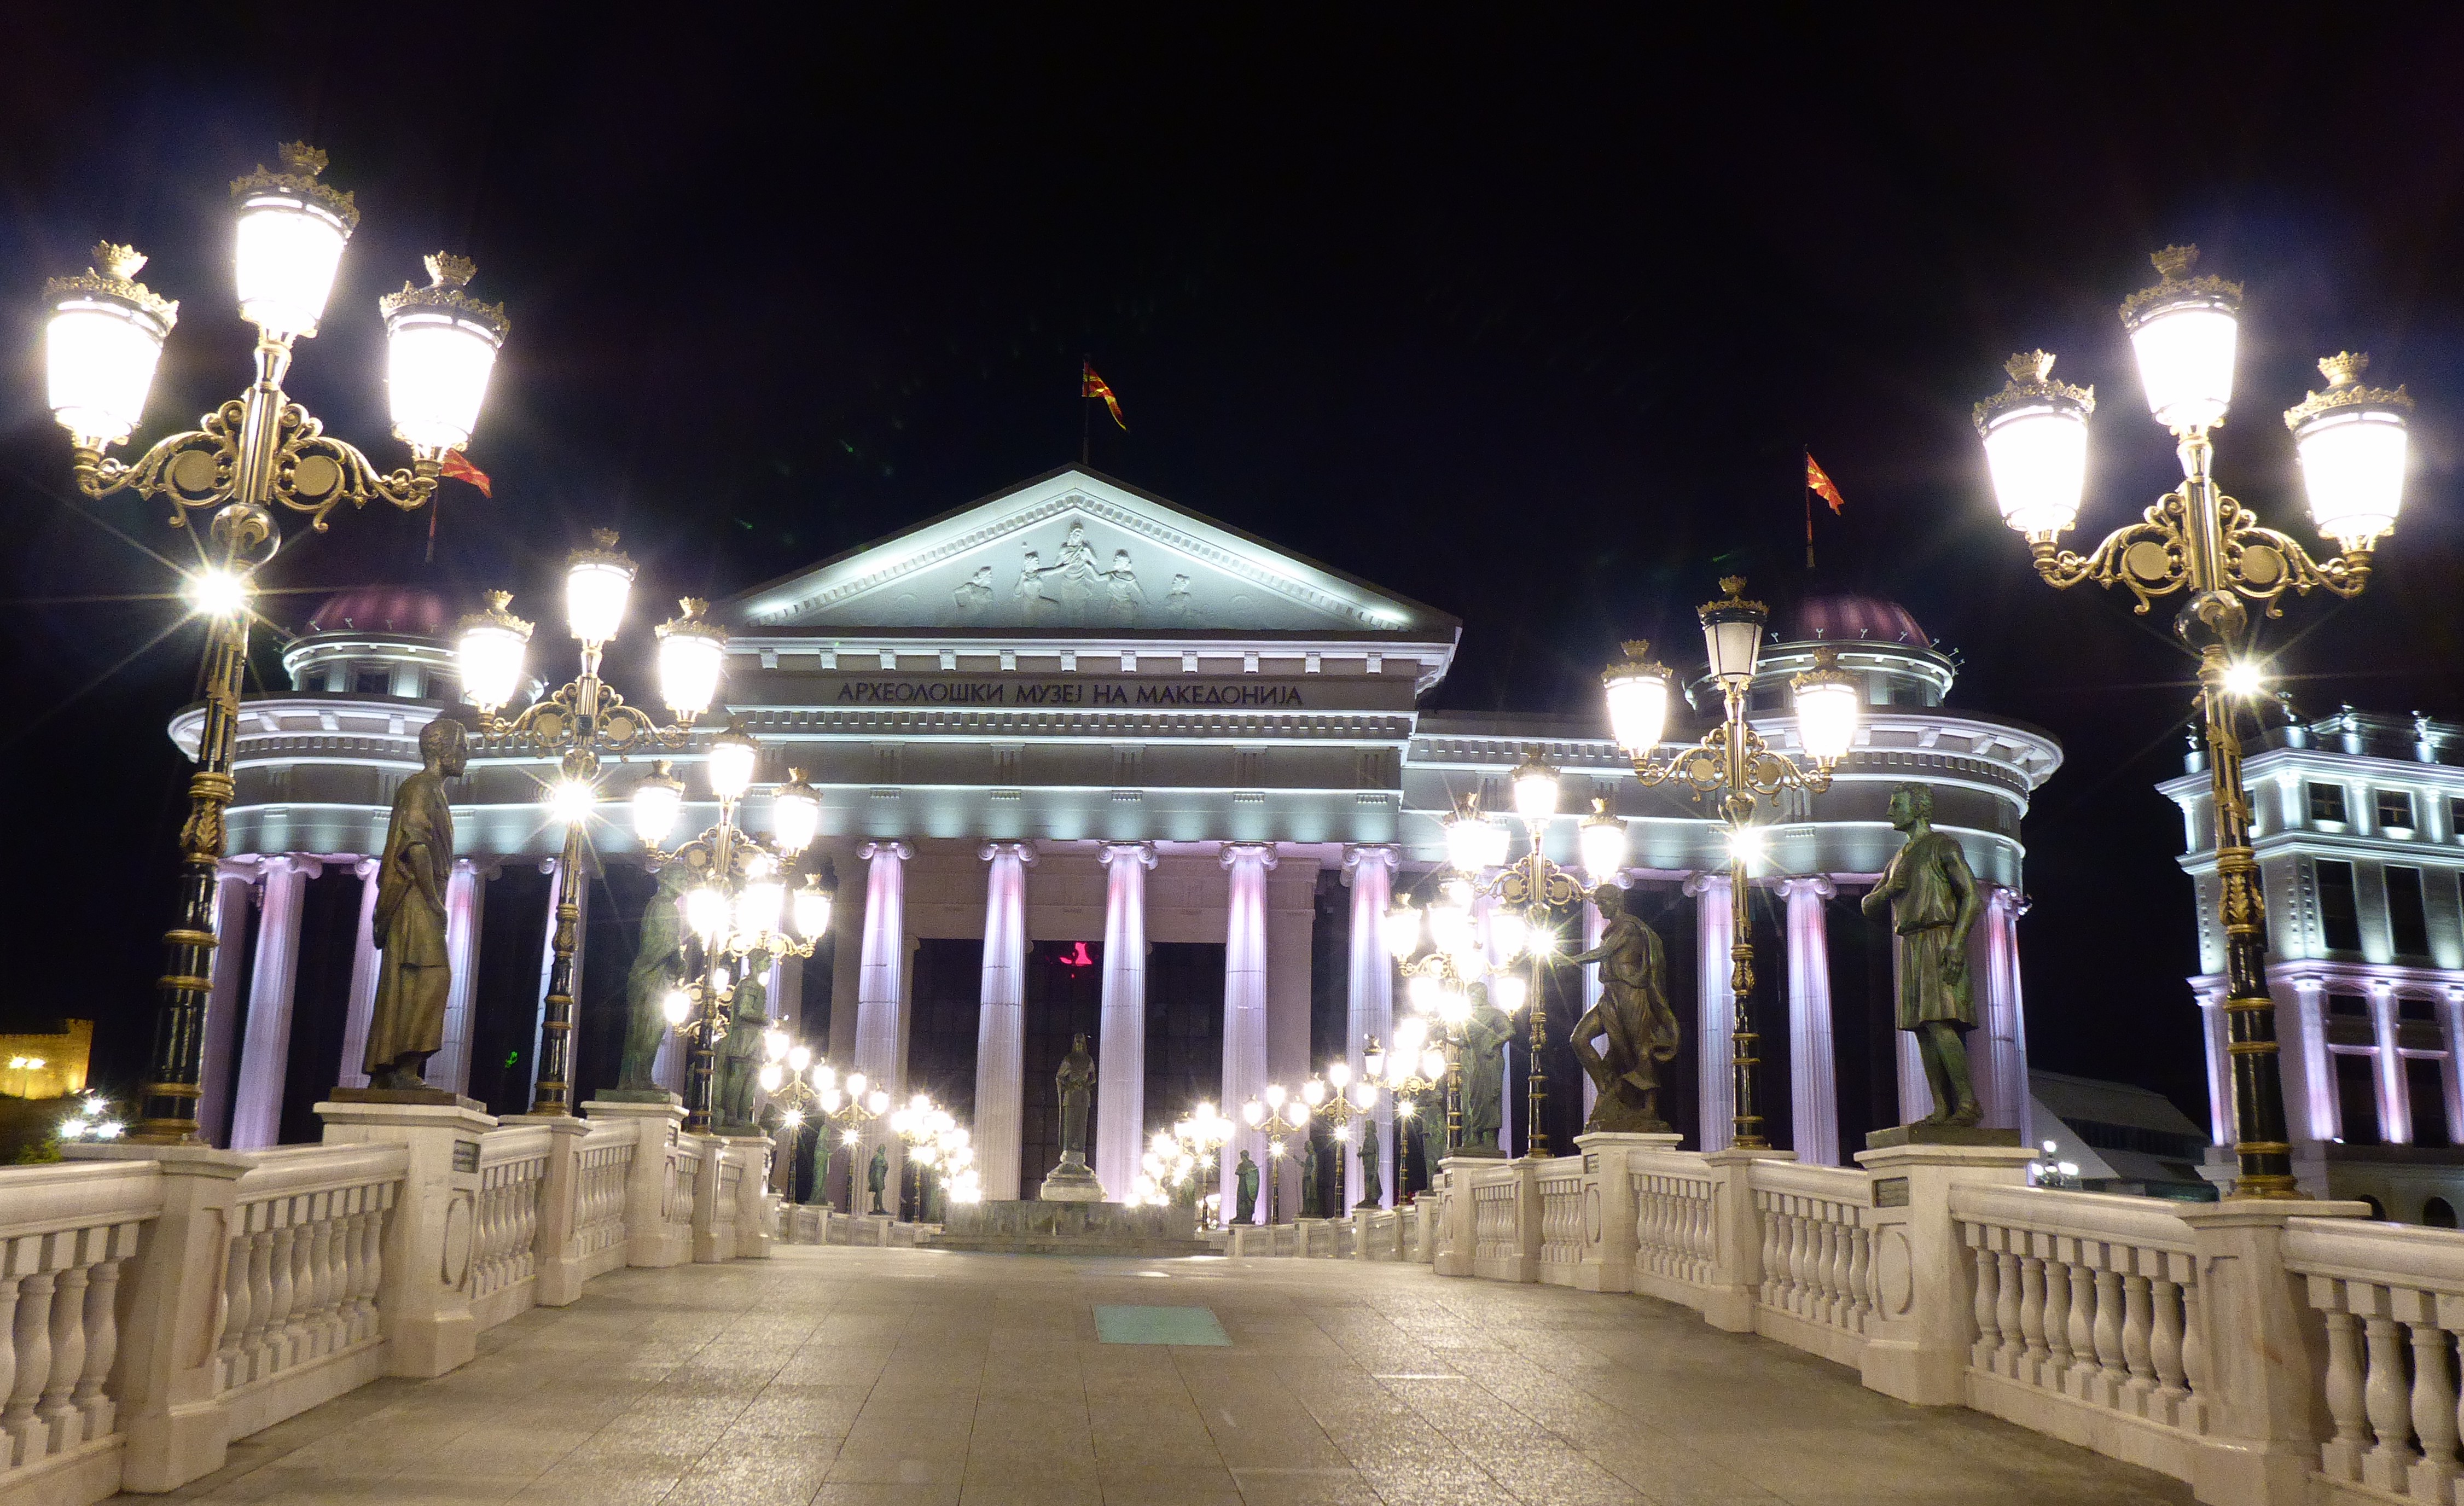 One of the beautiful lit bridges in Skopje. 